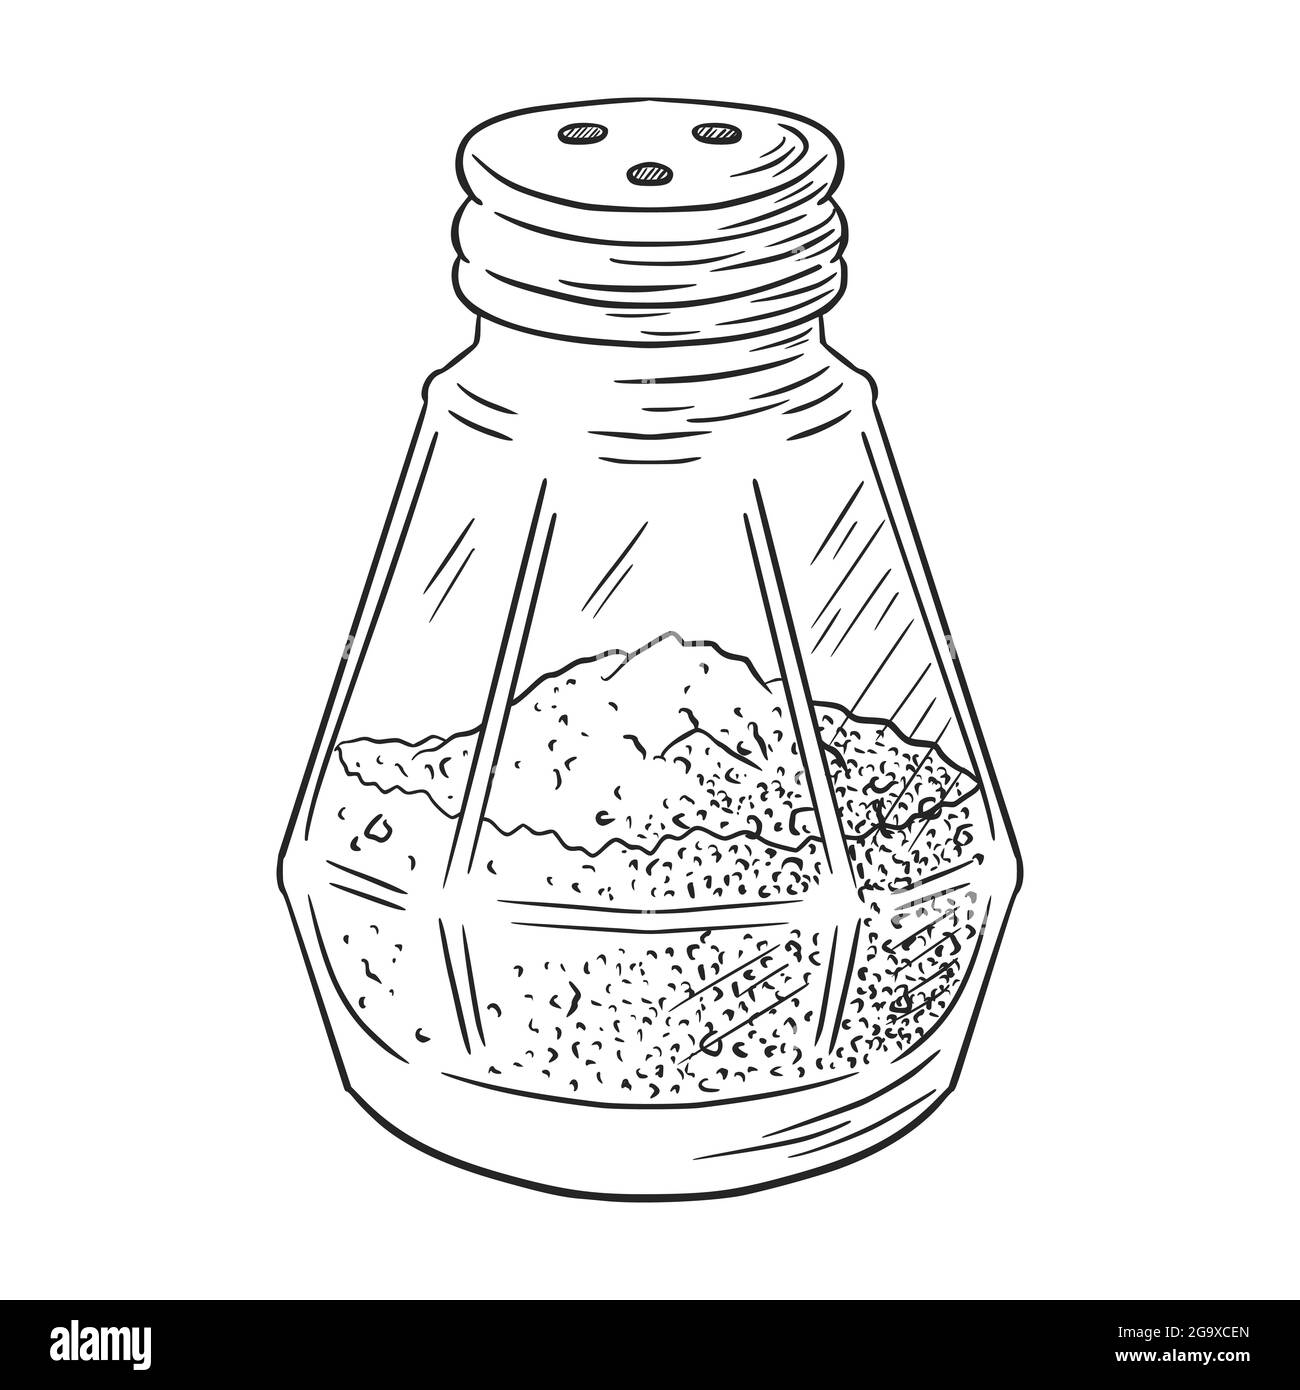 Illustration gravée Pepper Shaker. Pot en verre dessiné à la main, dessin vectoriel d'épices de style vintage pour logo, recette, menu, emblème, imprimés alimentaires, étiquettes, autocollants Illustration de Vecteur